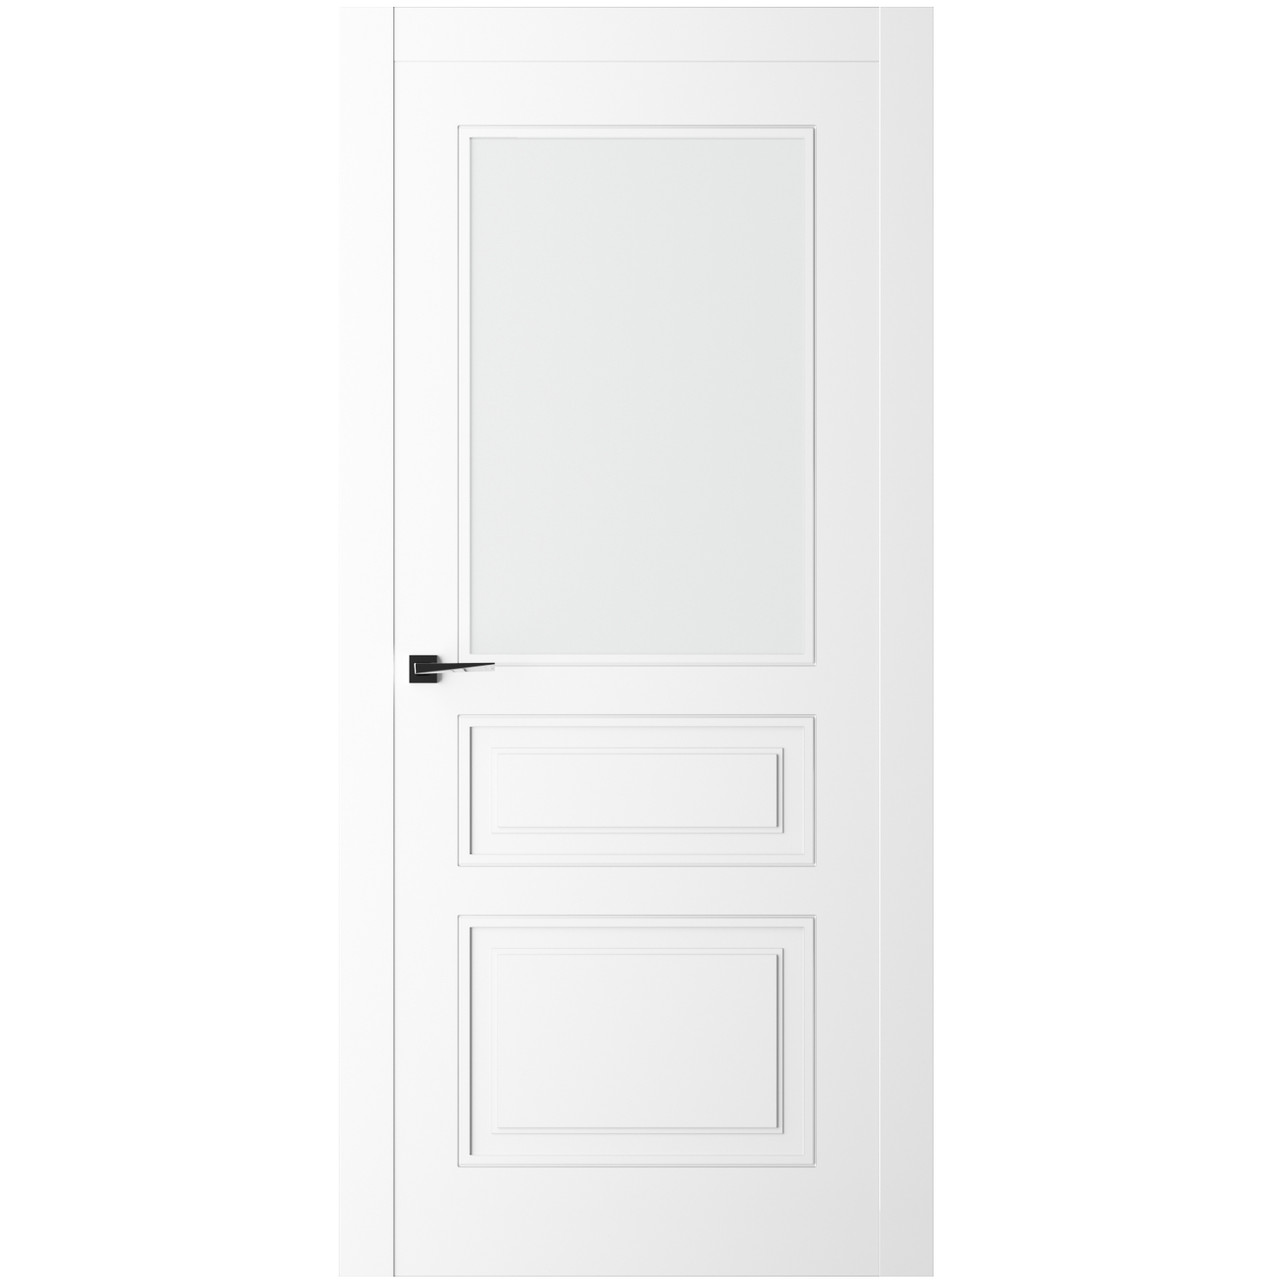 Дверь межкомнатная Ликорн Плоско-фрезерованная ДКПФГ.3 1900*800*40мм (без замков и петель, с телеск. коробкой